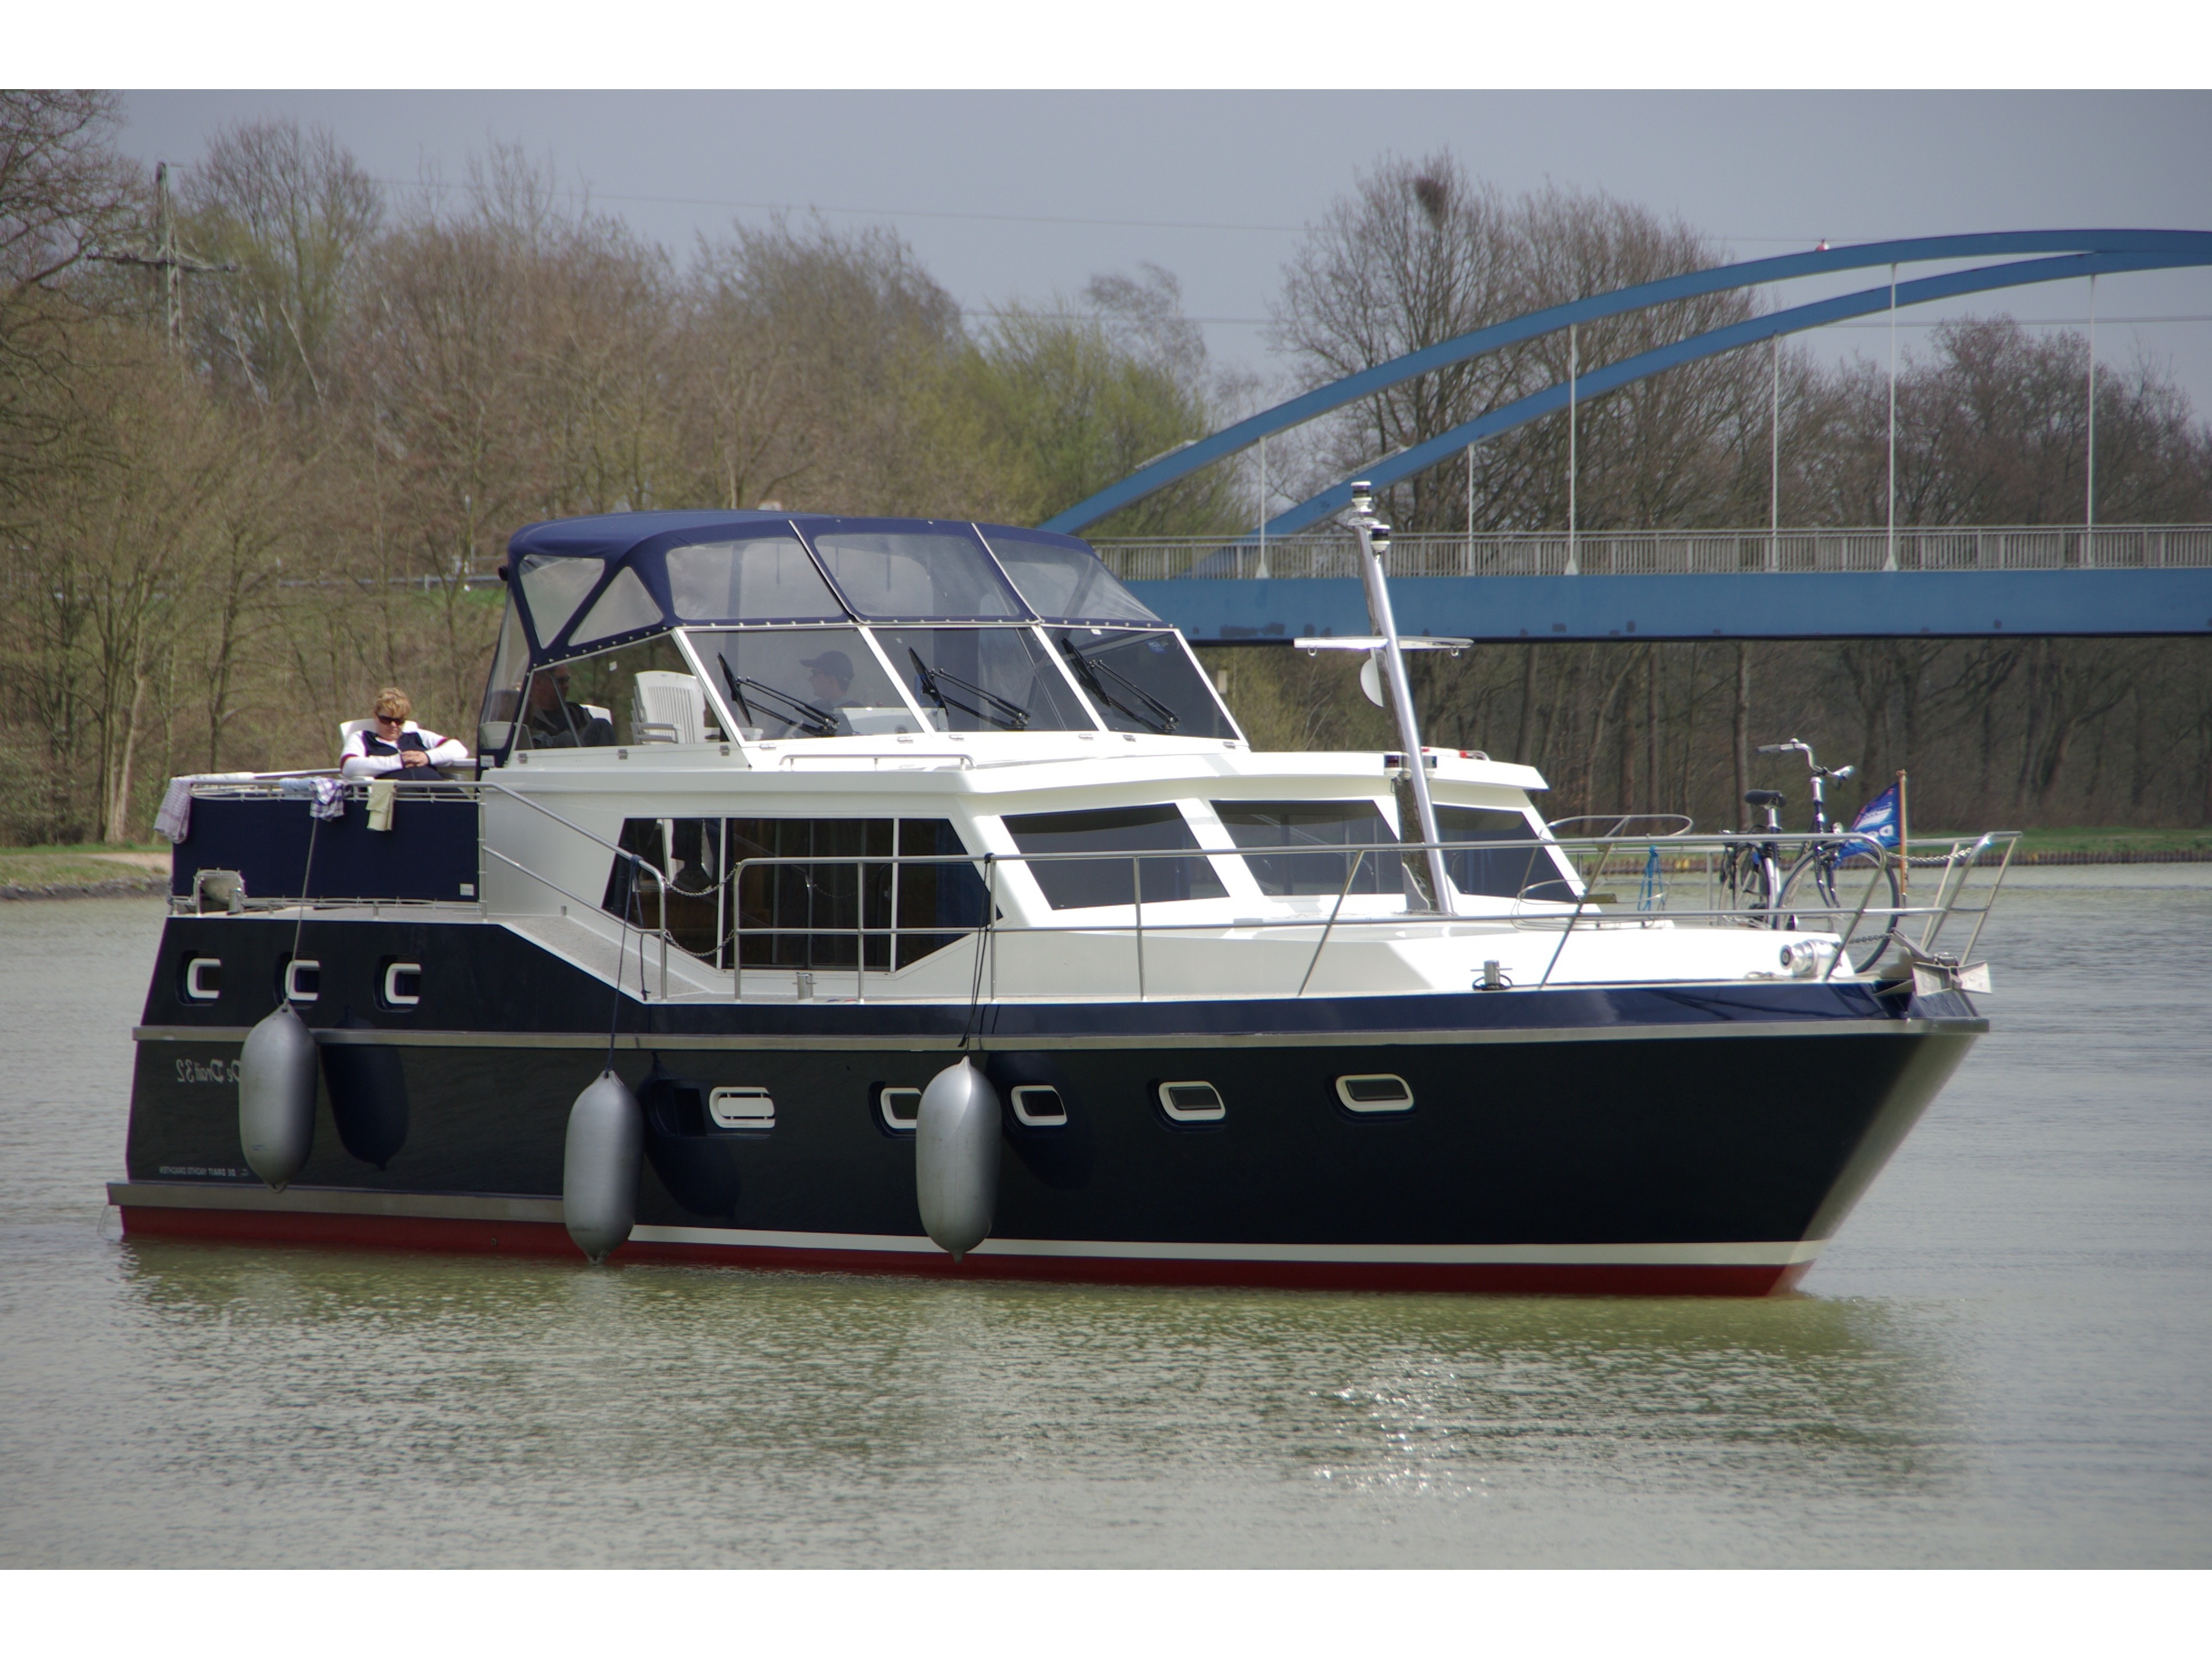 De Drait Renal 45 - Yacht Charter Plaue & Boat hire in Germany Brandenburg an der Havel Marina Brandenburg-Plaue 2